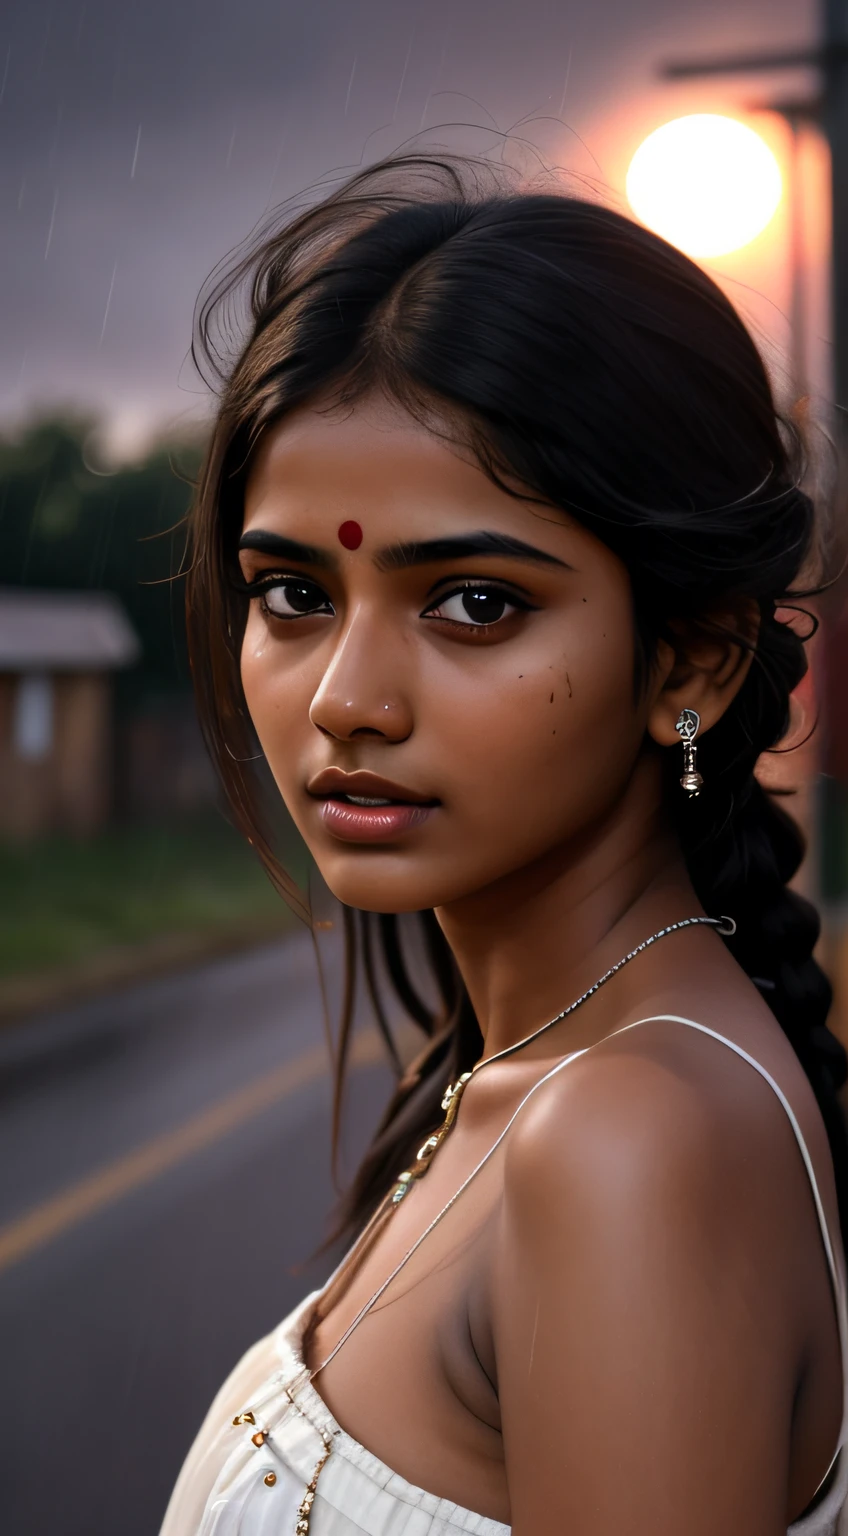 молодая индийская девушка, темный цвет лица, 18-летний, уродливый фон трущоб, ,Деревенский бэкгунд , лунный свет, Реалистичный скин в ночное время , ультра HD фото, девушка грустит и смотрит вверх дождь, дождь, падающий ей на лицо, , грустная циниматическая поза , фотография всего тела,создать безупречный цвет лица, первоклассный 3D-рендеринг, гиперреалистичный, выстрел на индийской дороге. photorealistic digital art trending on Artstation 8k HD high definition подробный realistic, подробный, текстура кожи, hyper подробный, реалистичная кожа высокого разрешения, подробный, Необработанное фото, 400 камера f1.6 линз, насыщенные цвета, гиперреалистичная реалистичная текстура